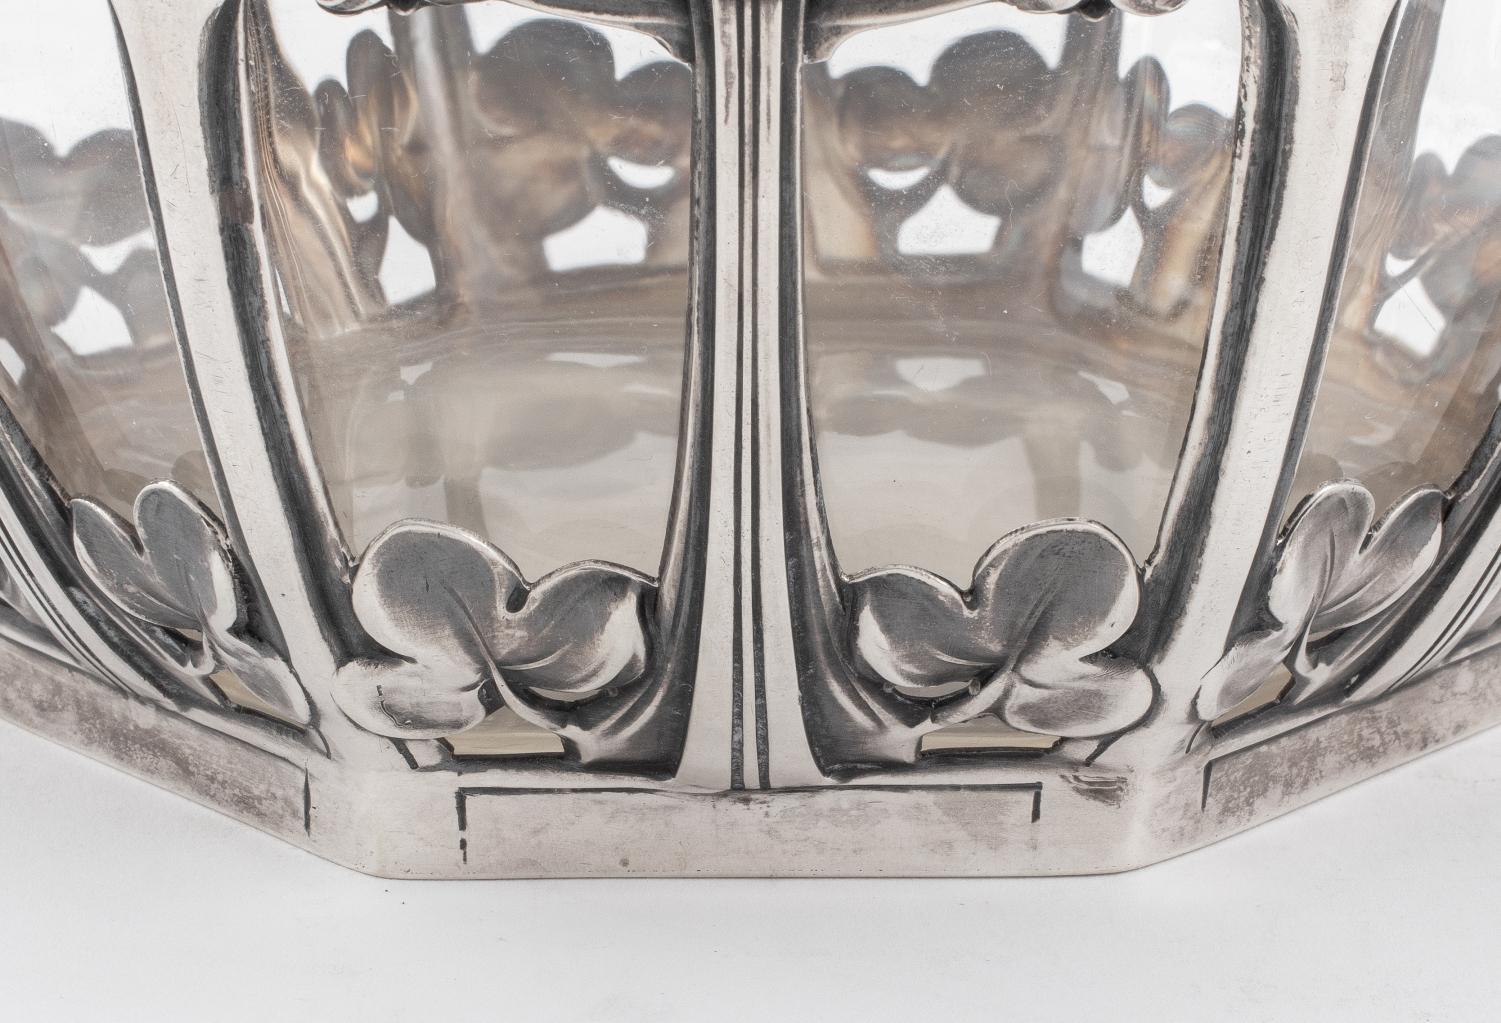 L. Posen Jugendstil Silver and Glass Bowl, circa 1905 For Sale 4